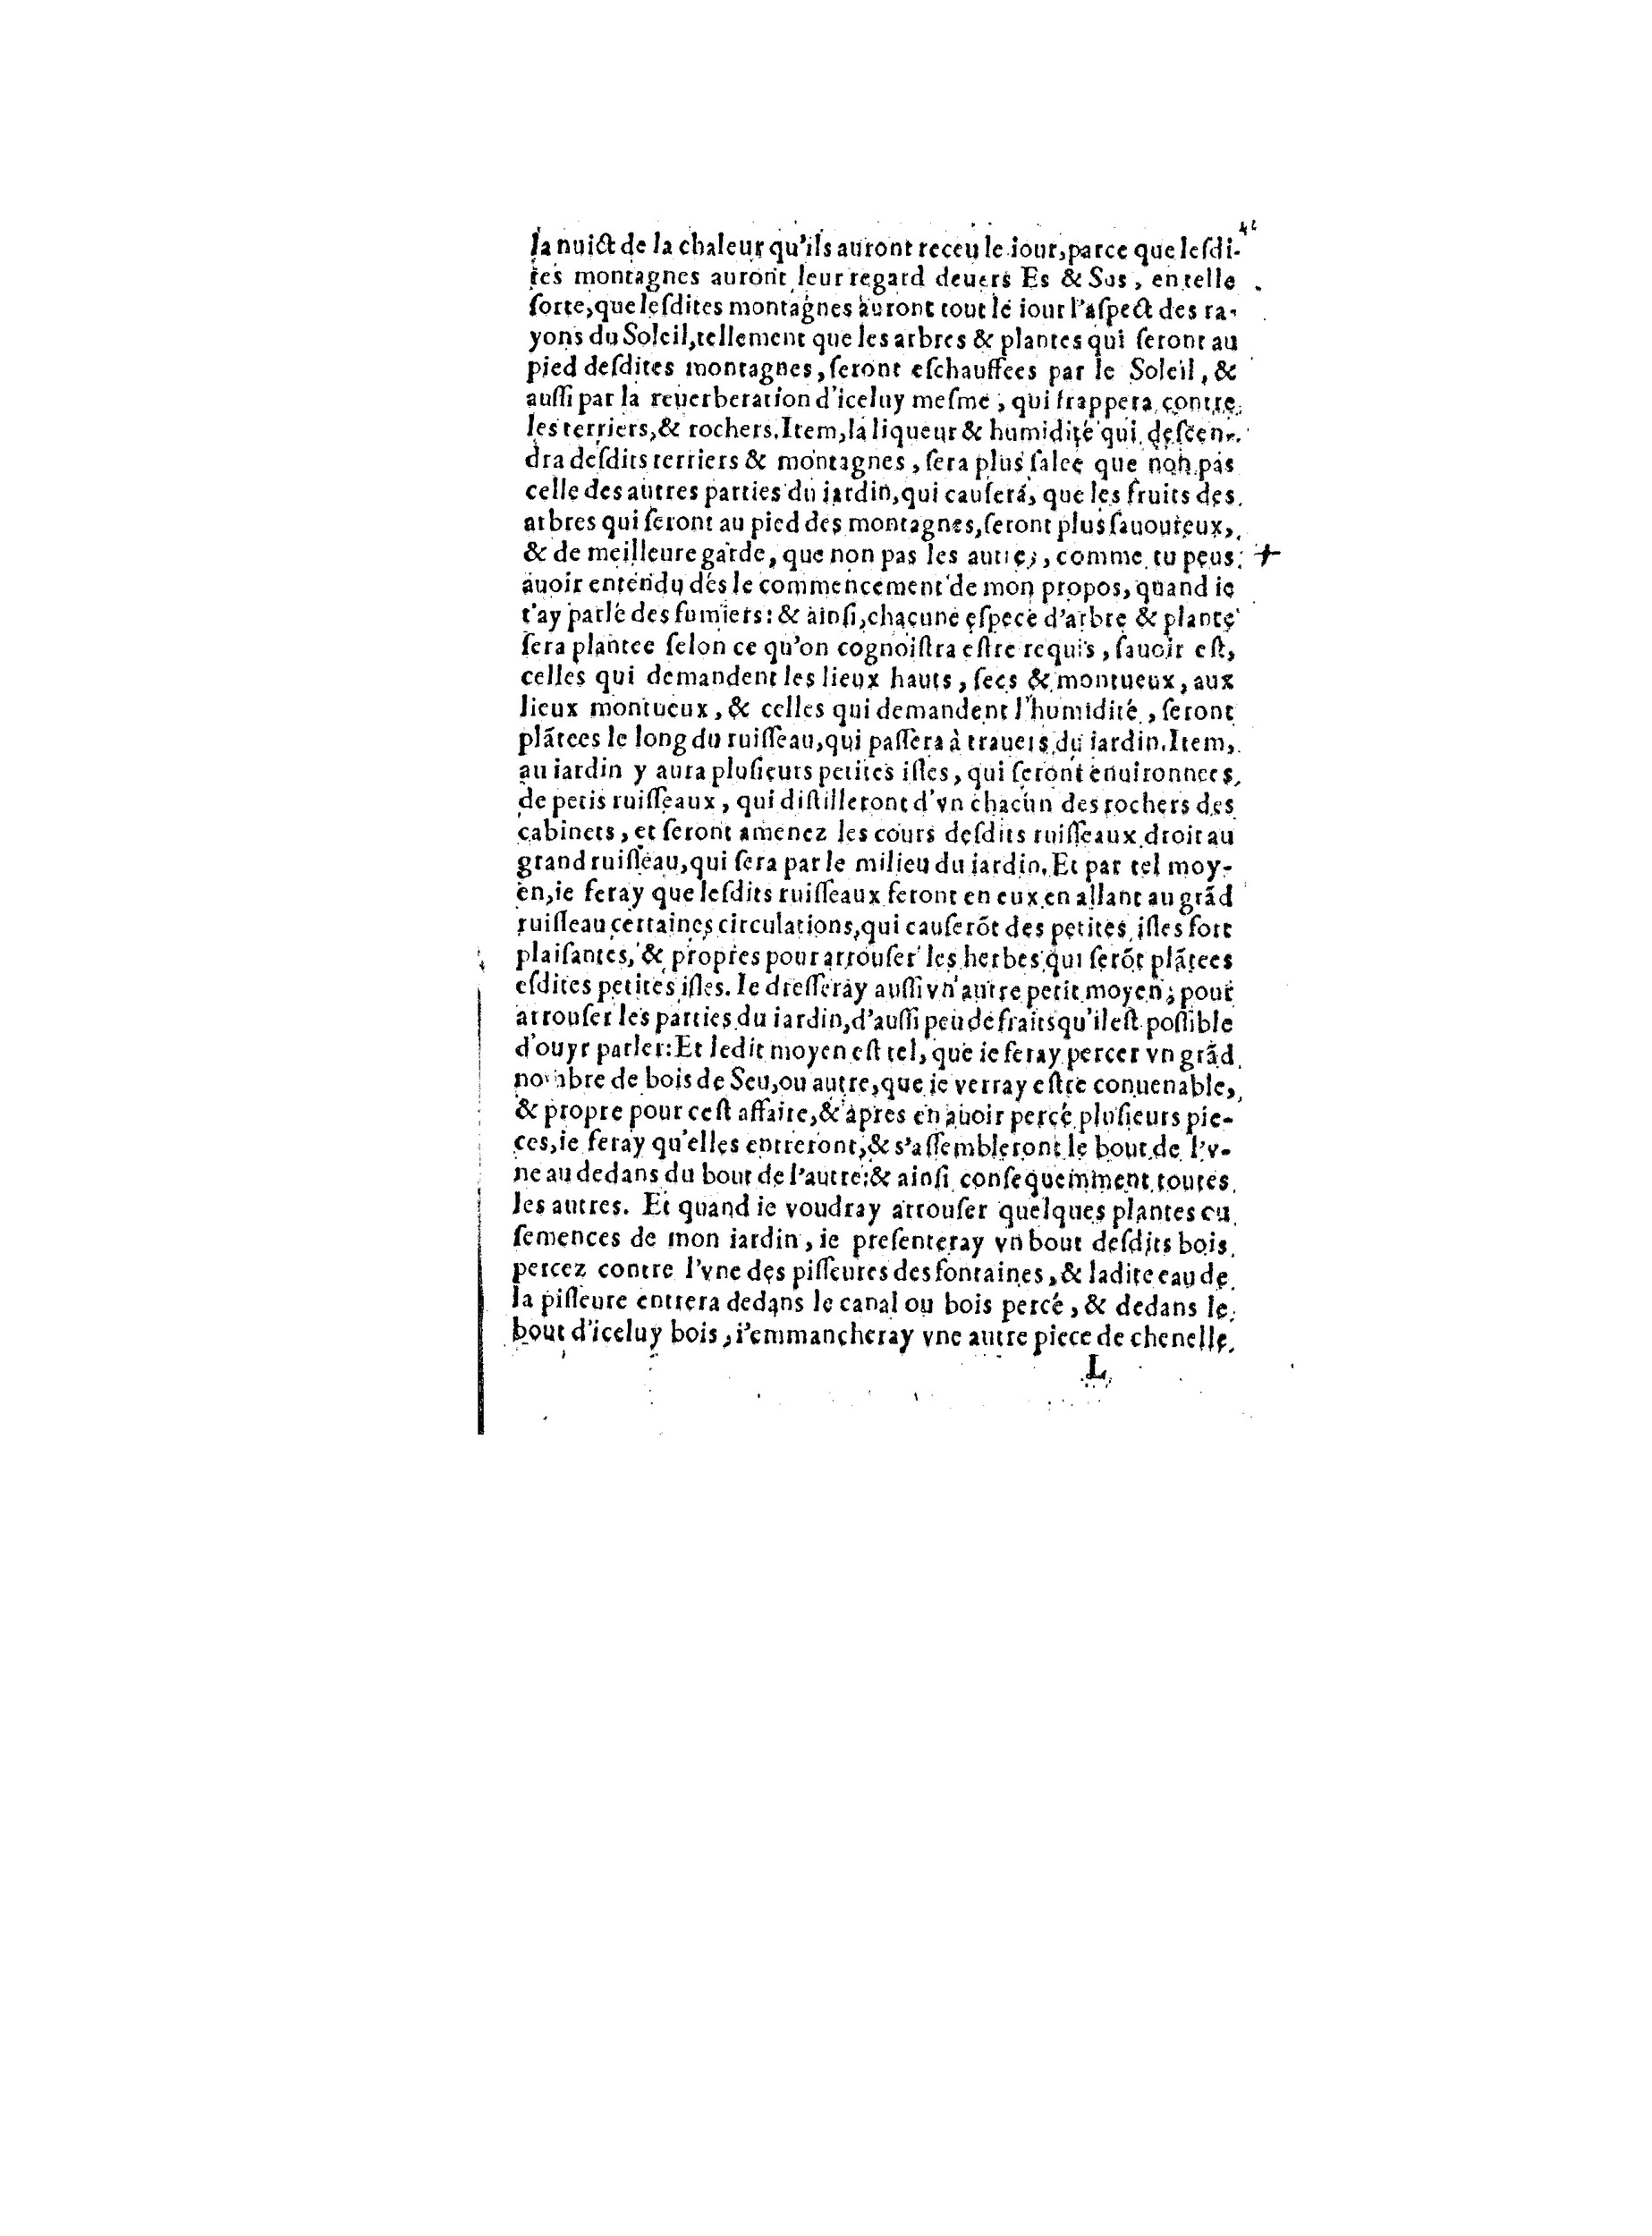 1563 Recepte veritable Berton_BNF_Page_084.jpg